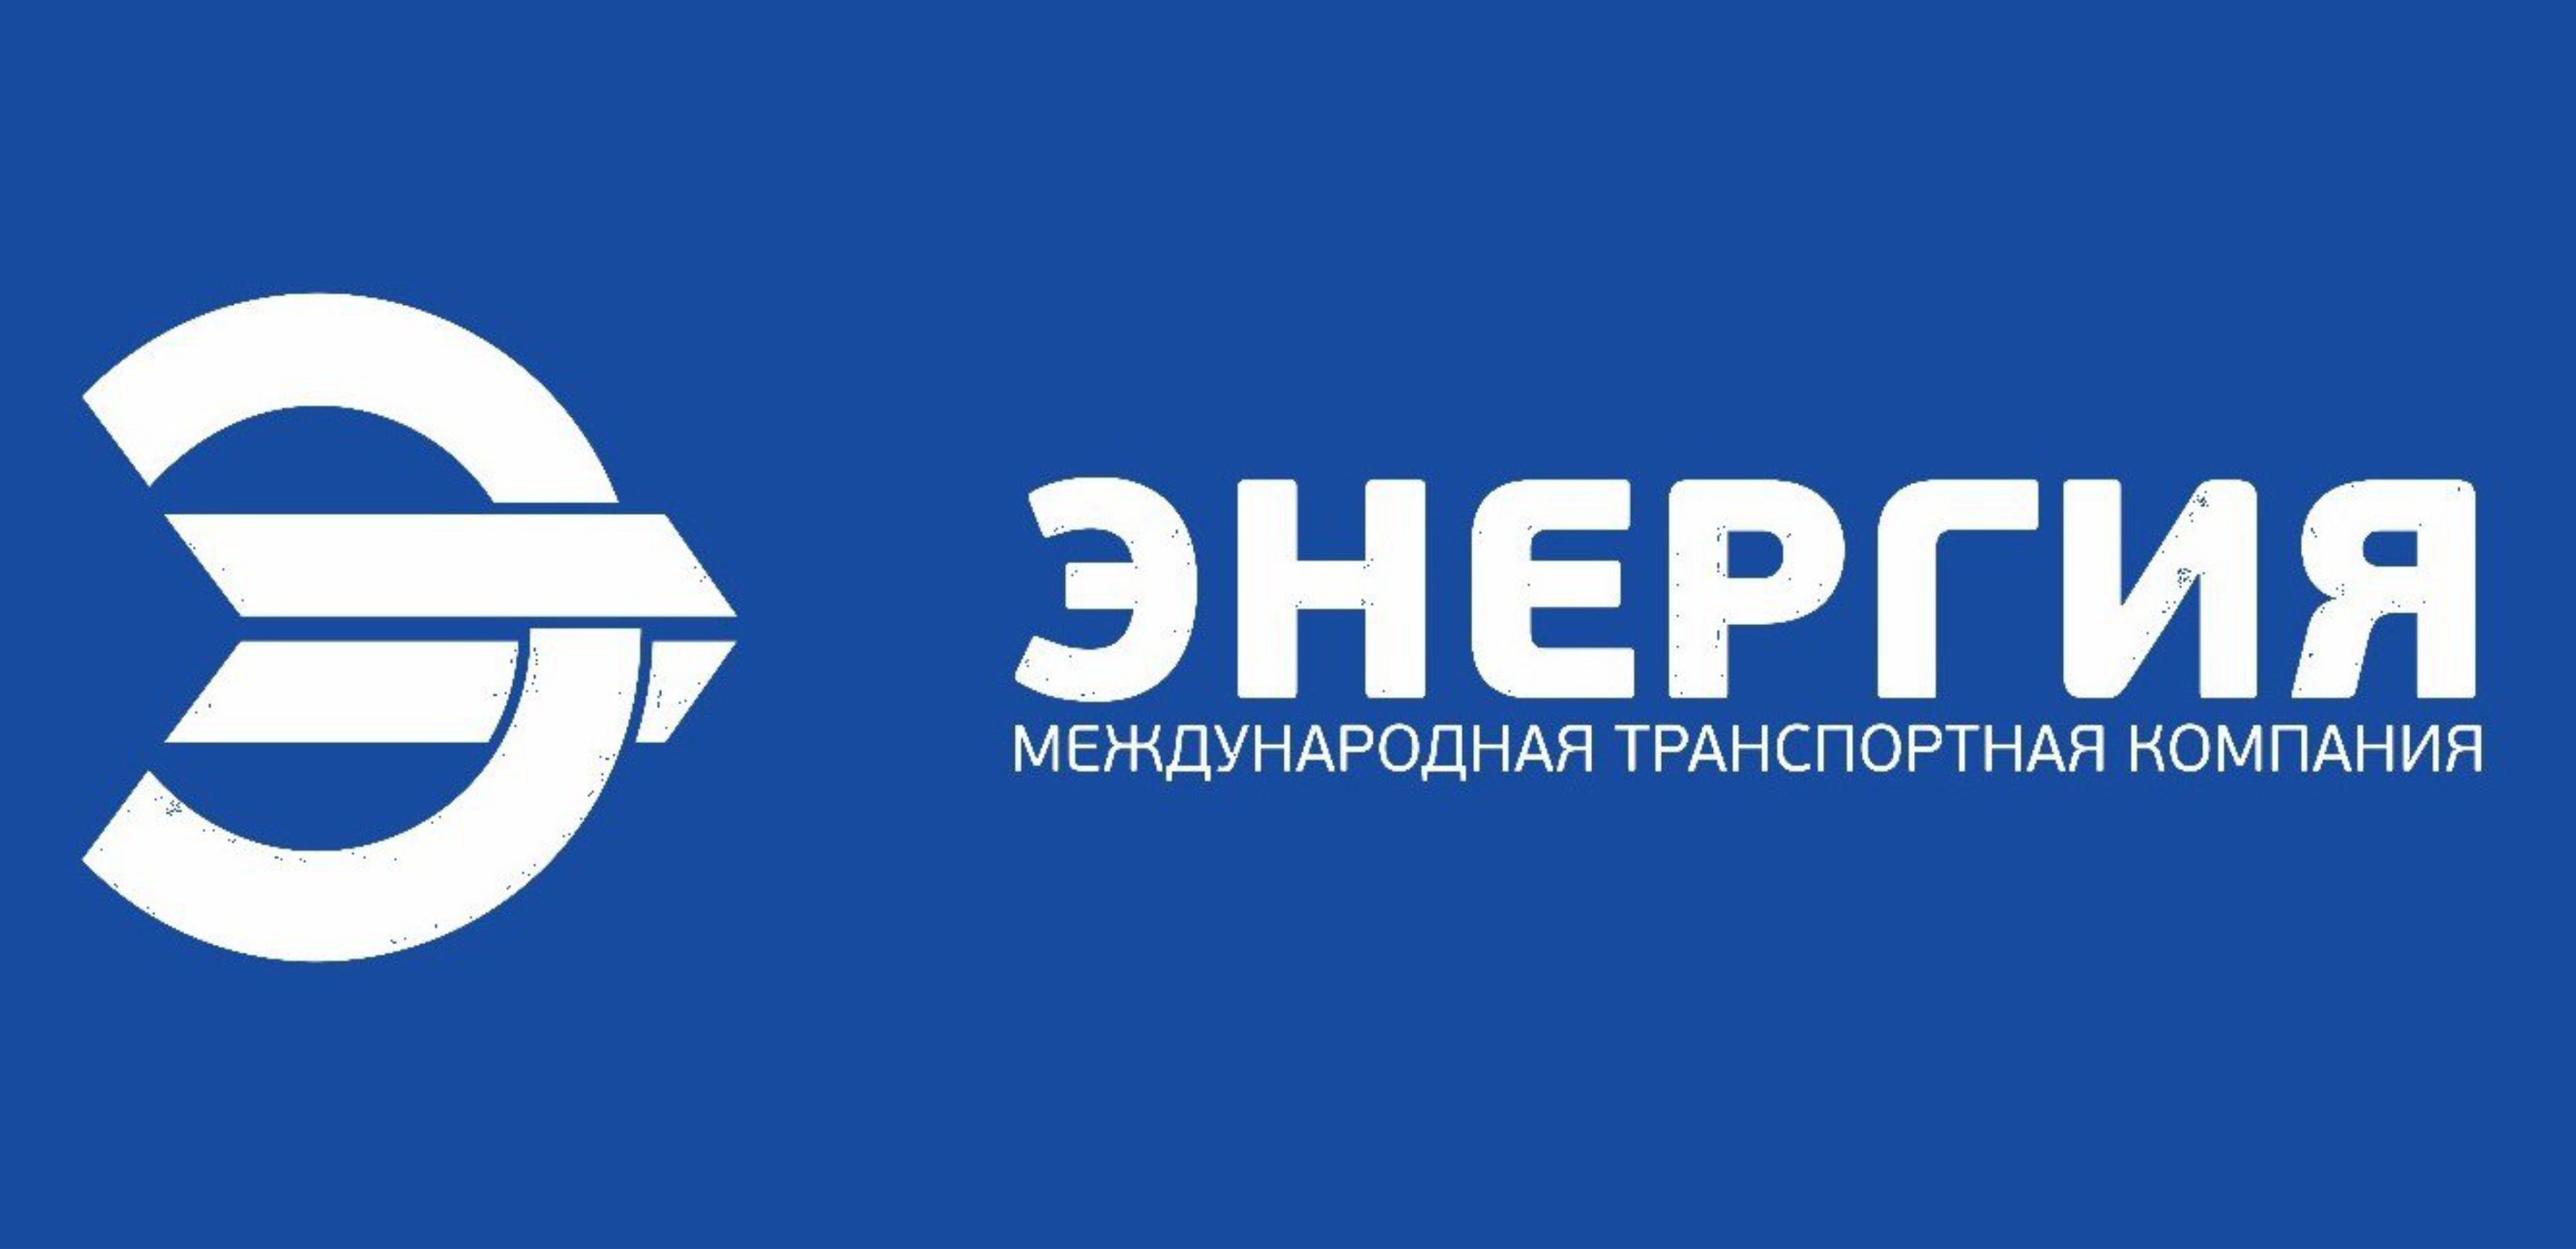 Энергия транспортная компания. Транспортная компания энергия Владивосток. ТК энергия лого. Международная транспортная компания энергия.